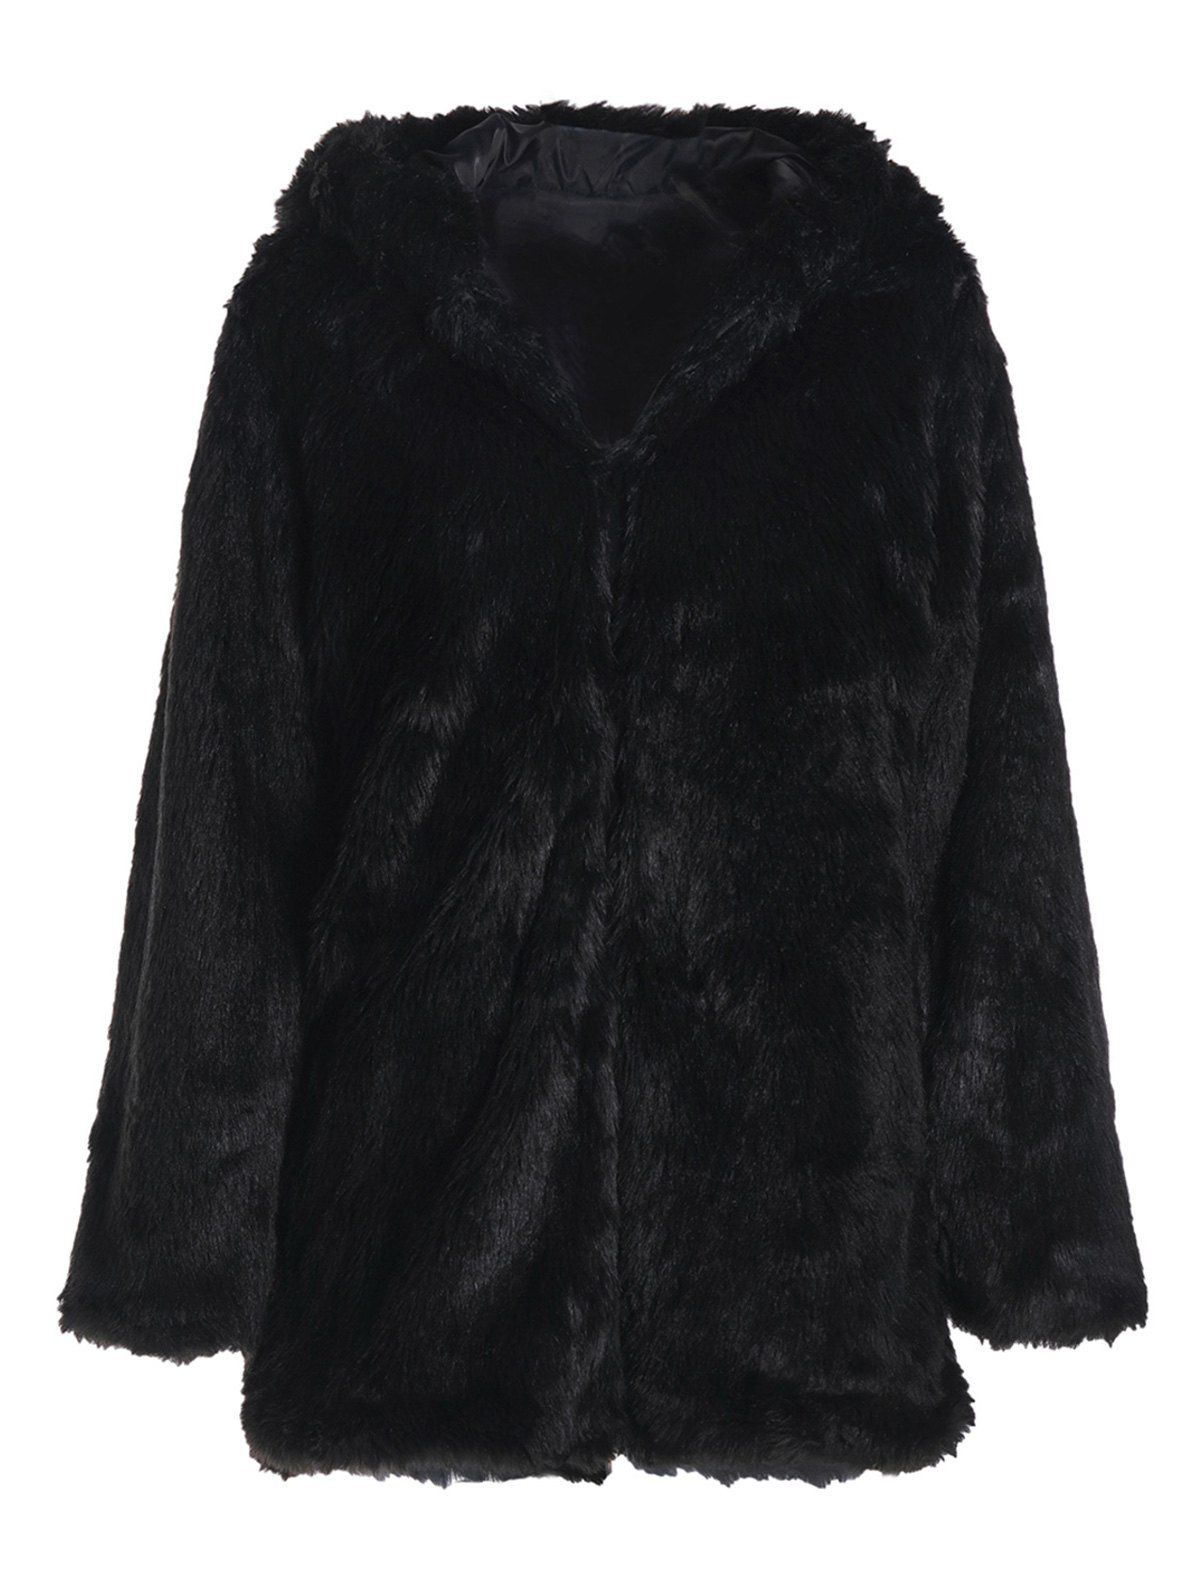 Noble Long Sleeve Hooded Faux Fur Women's Black Coat, BLACK, S in ...